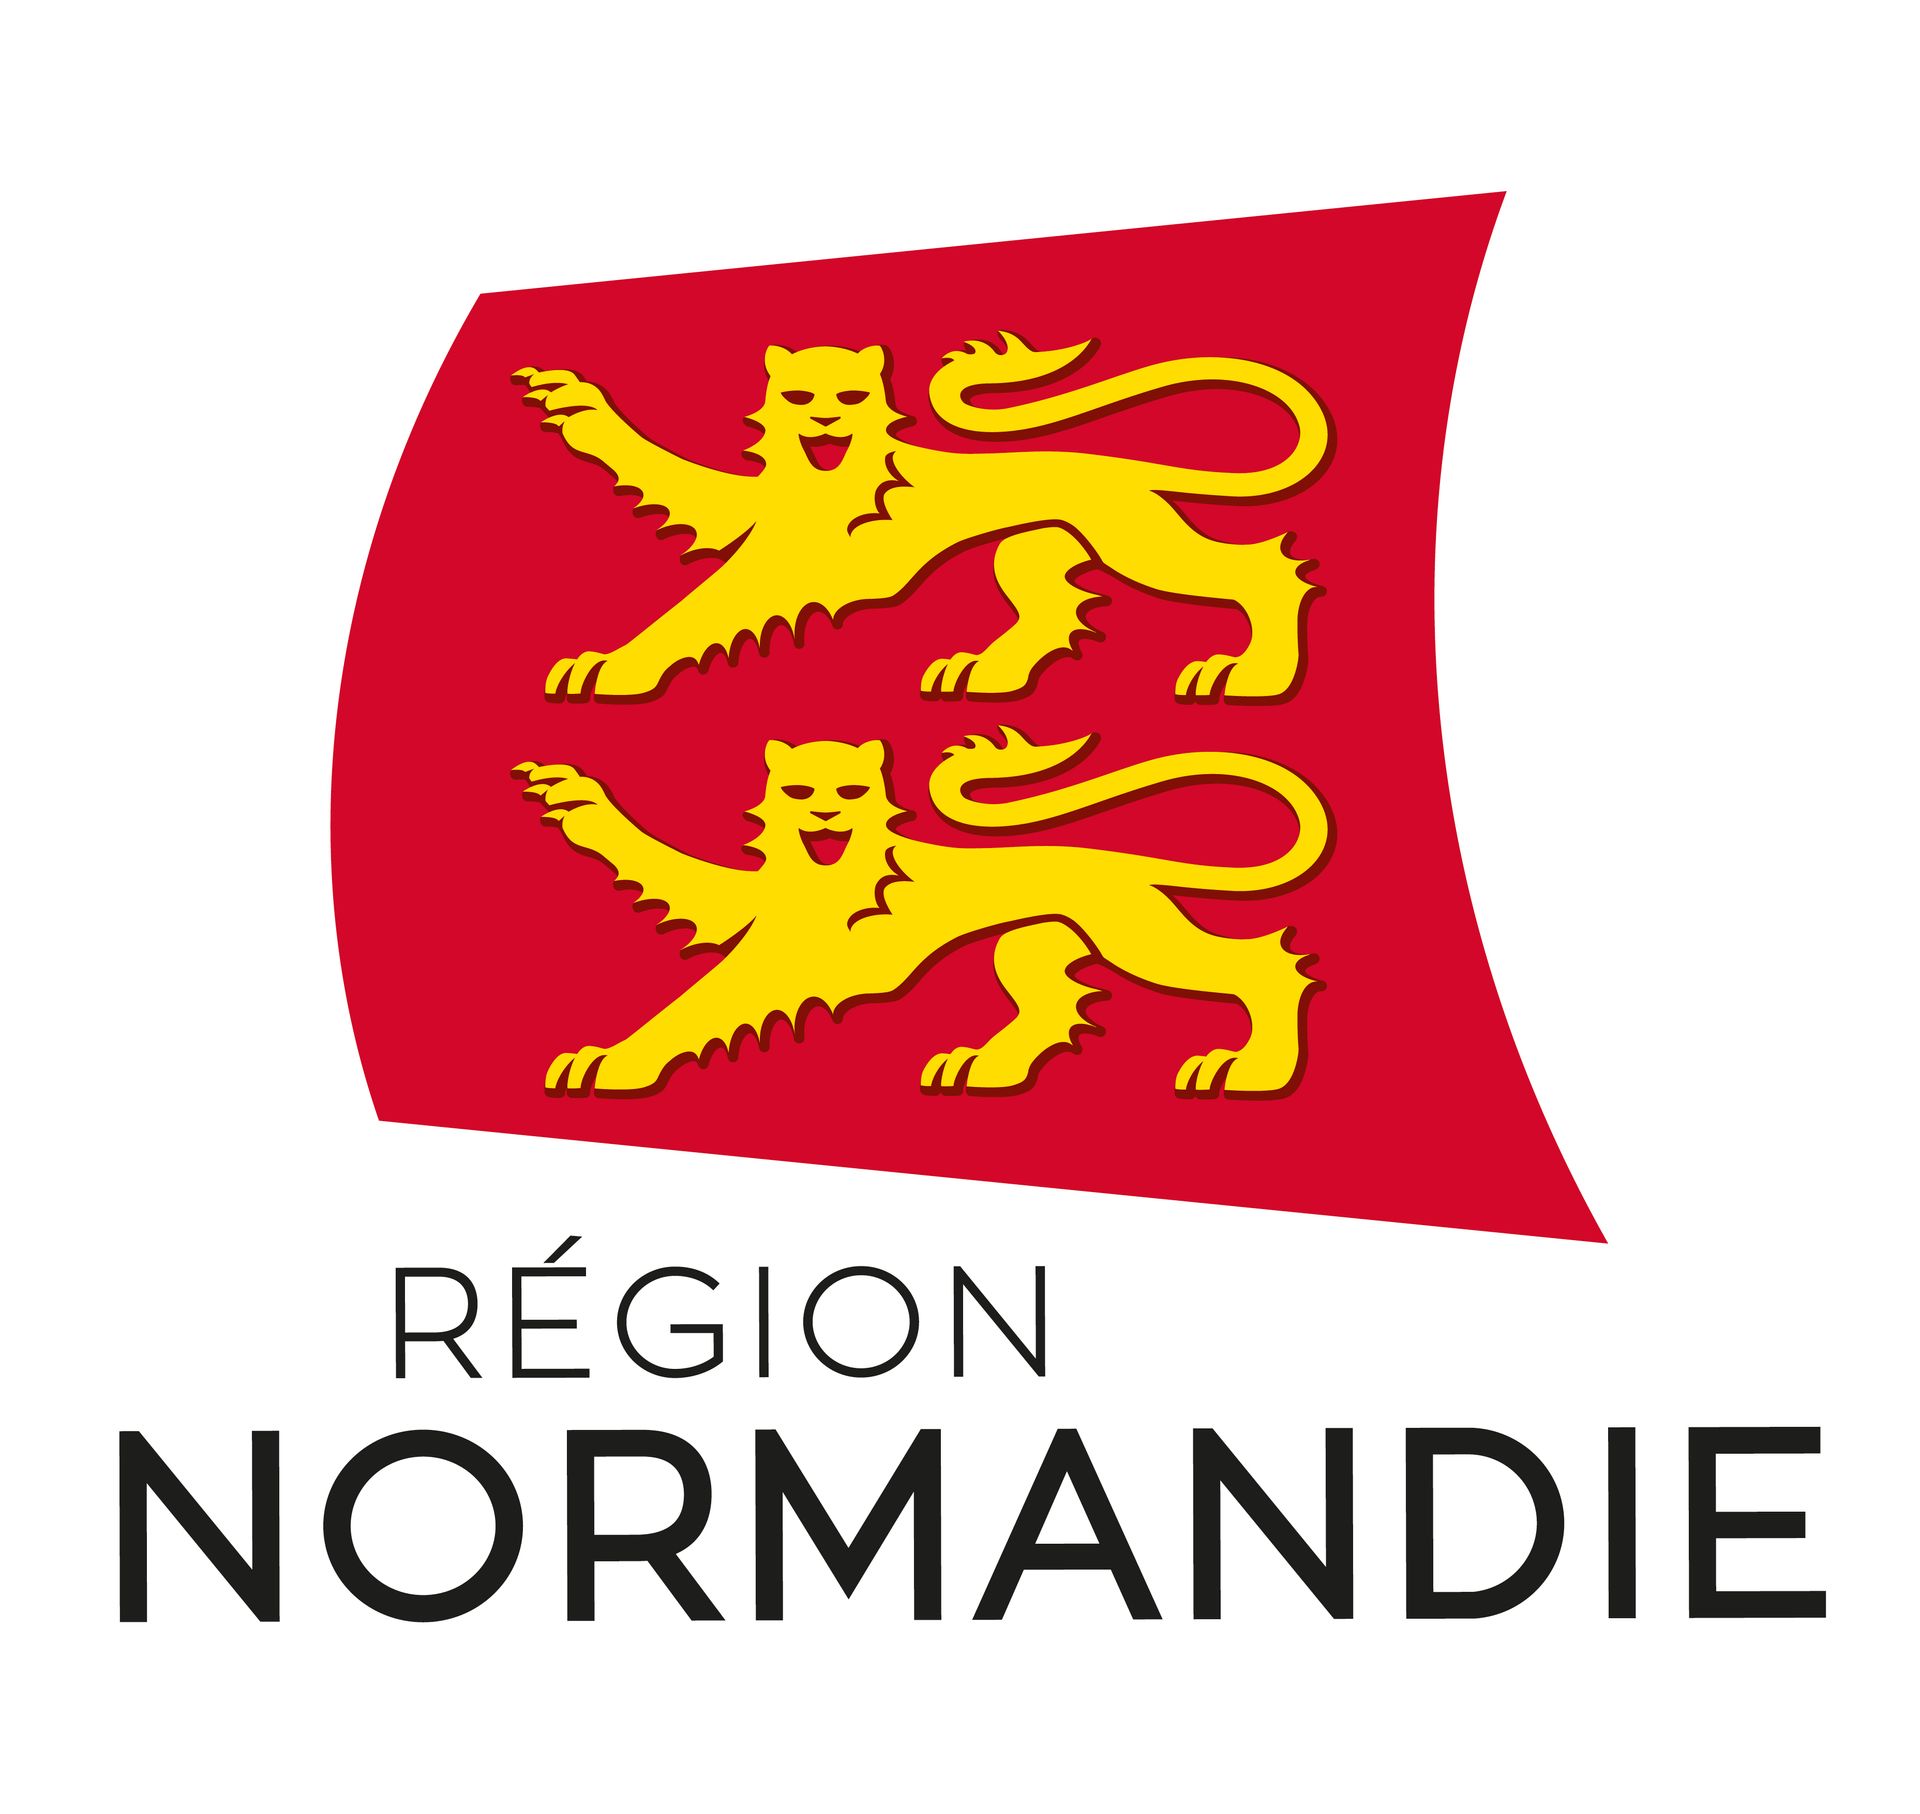 Région normandie, le logo qui est un drapeau rouge avec 2 lions jaunes l'un au dessous de l'autre